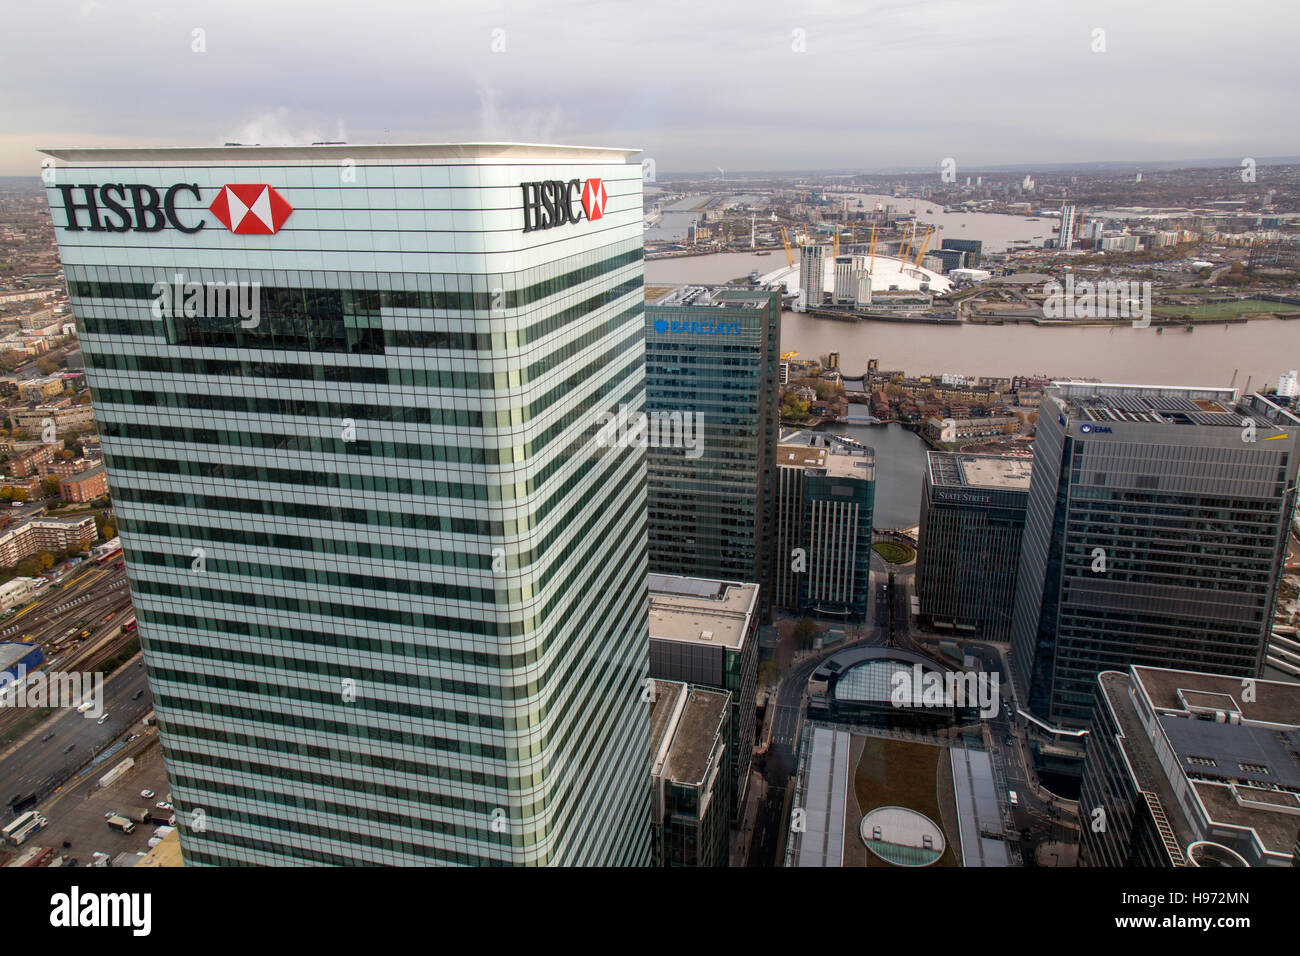 Point de vue élevé vue de la Banque HSBC et Barclays Bank bureaux à Canary Wharf, Londres, avec l'O2 arena et Tamise Banque D'Images